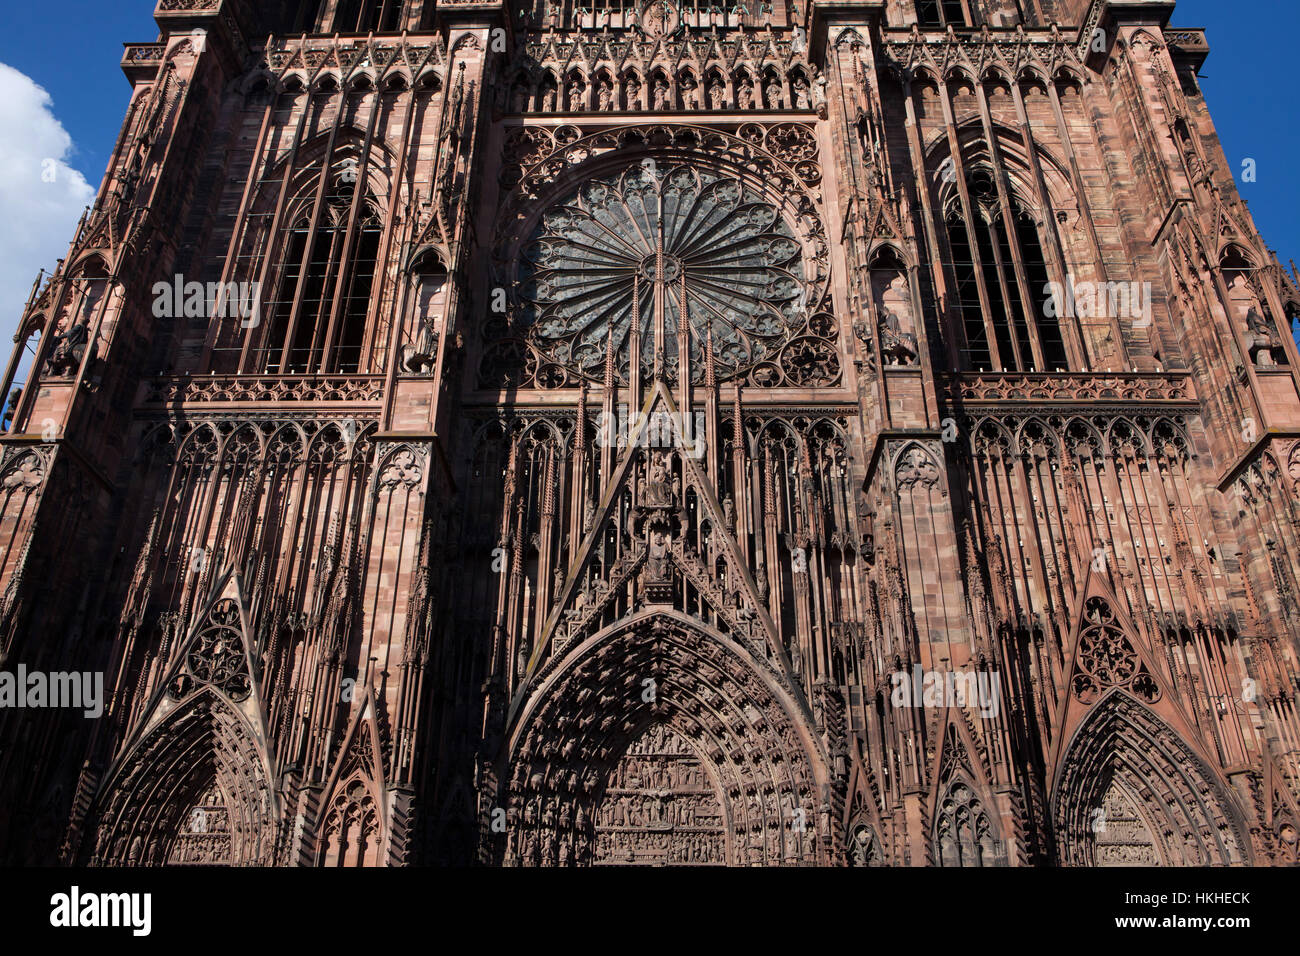 La cattedrale di Strasburgo (la cattedrale di Notre-dame de Strasbourg) raffigurato da Rue Merciere a Strasburgo, Alsazia, Francia. Foto Stock